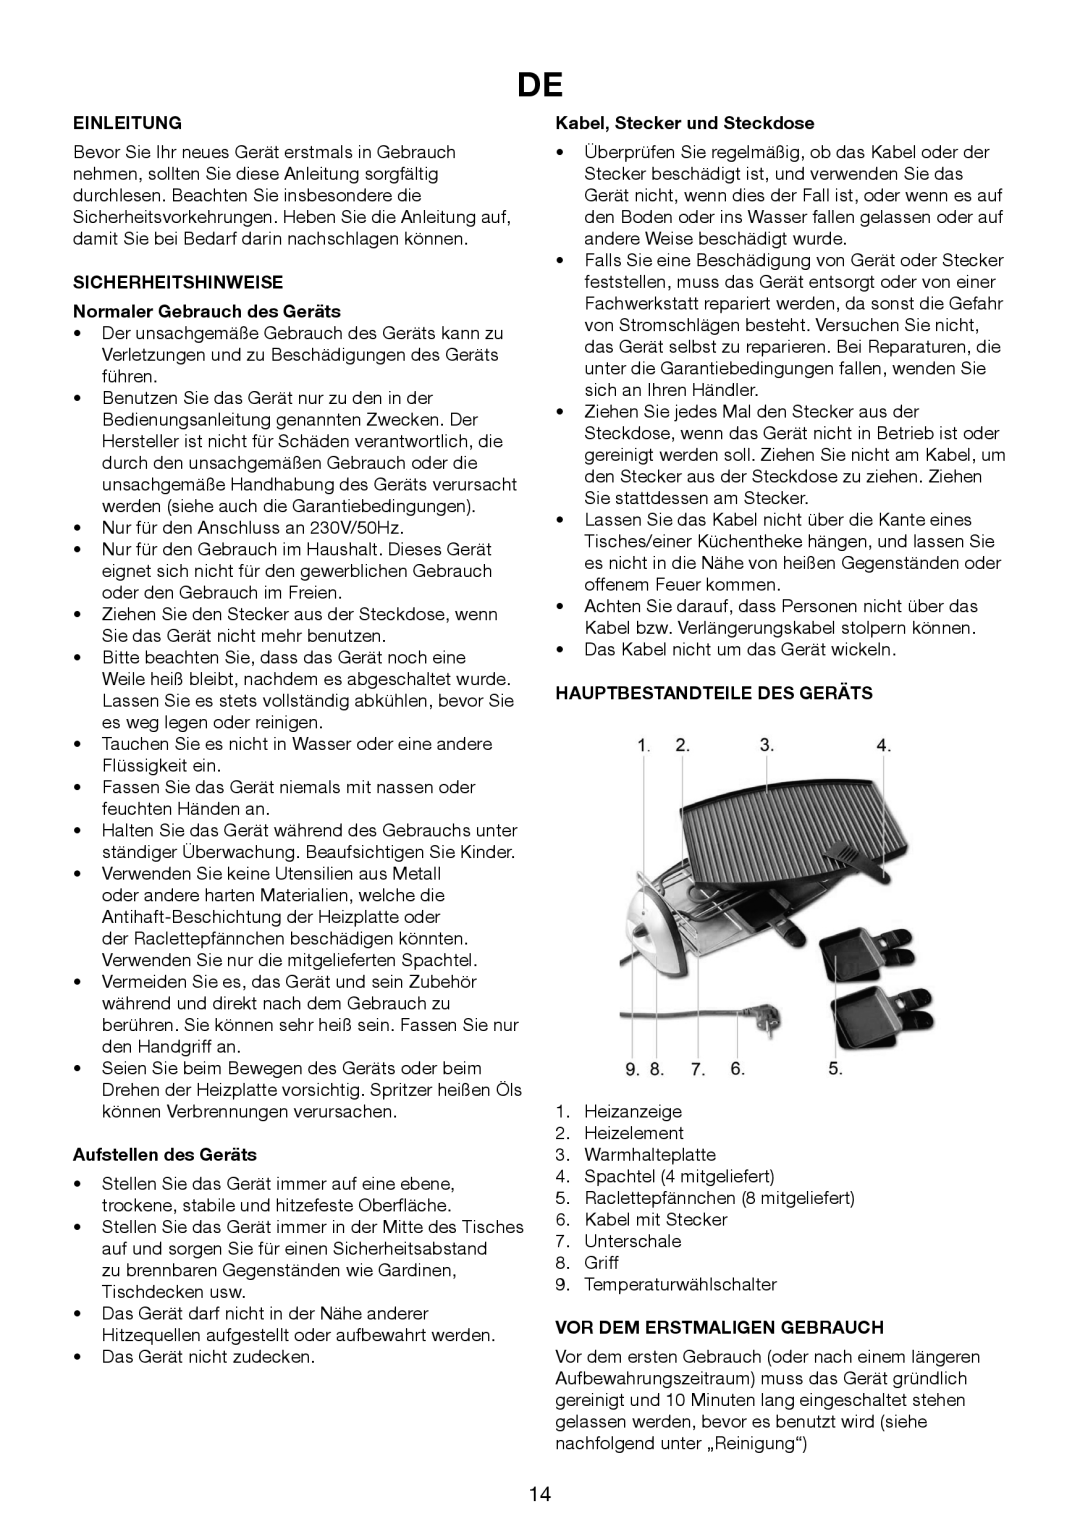 Melissa 243-045 manual Einleitung, SICHERHEITSHINWEISE Normaler Gebrauch des Geräts, Aufstellen des Geräts 